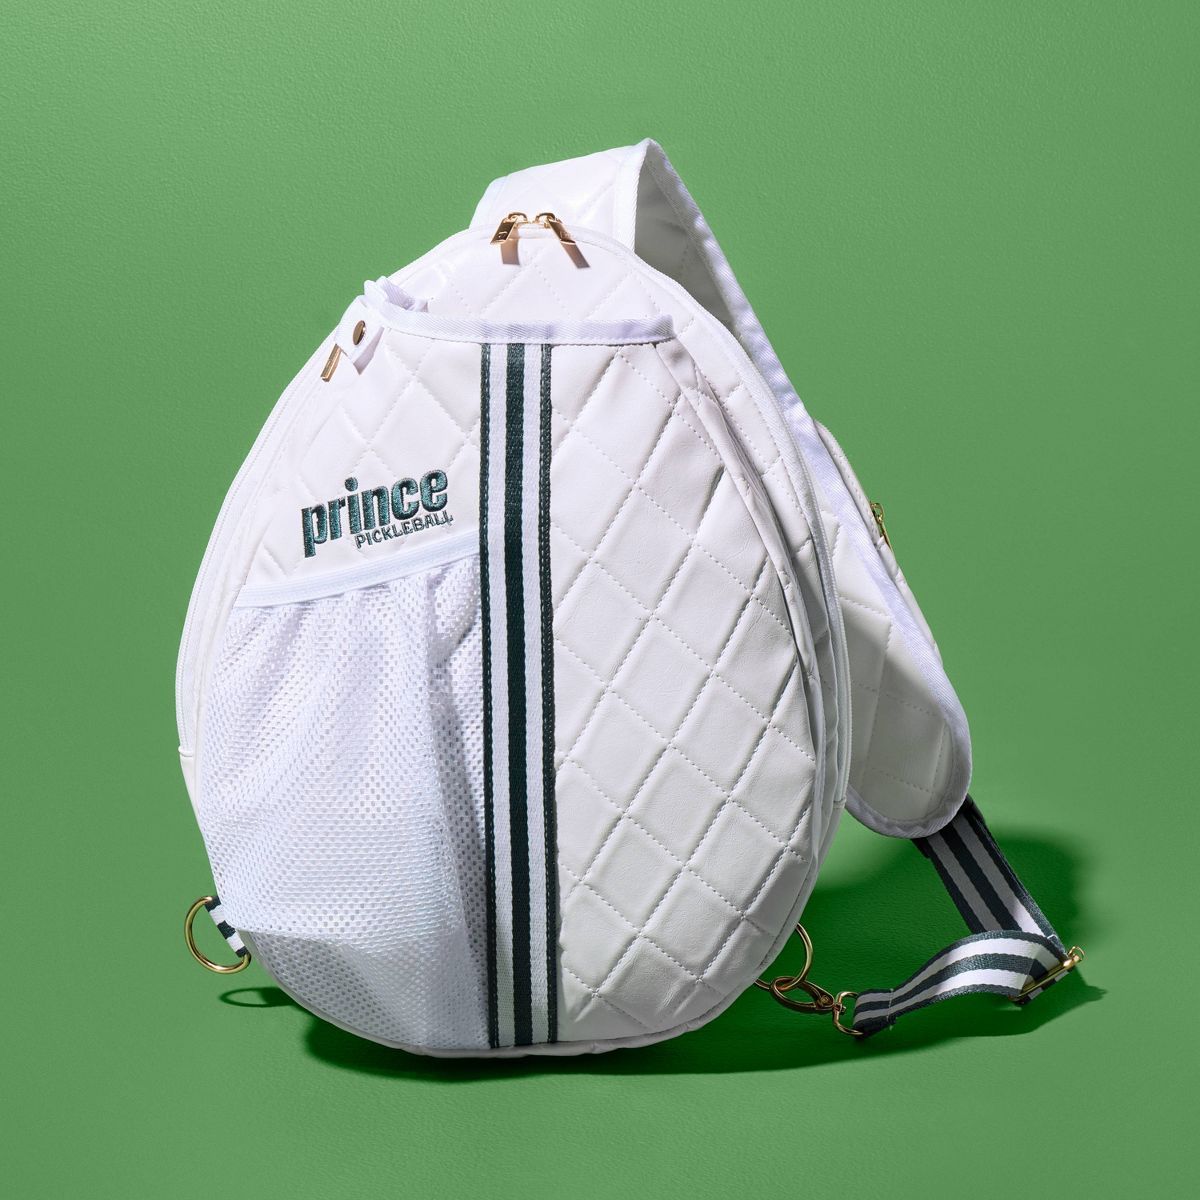 Prince Pickleball Sling Bag - White | Target